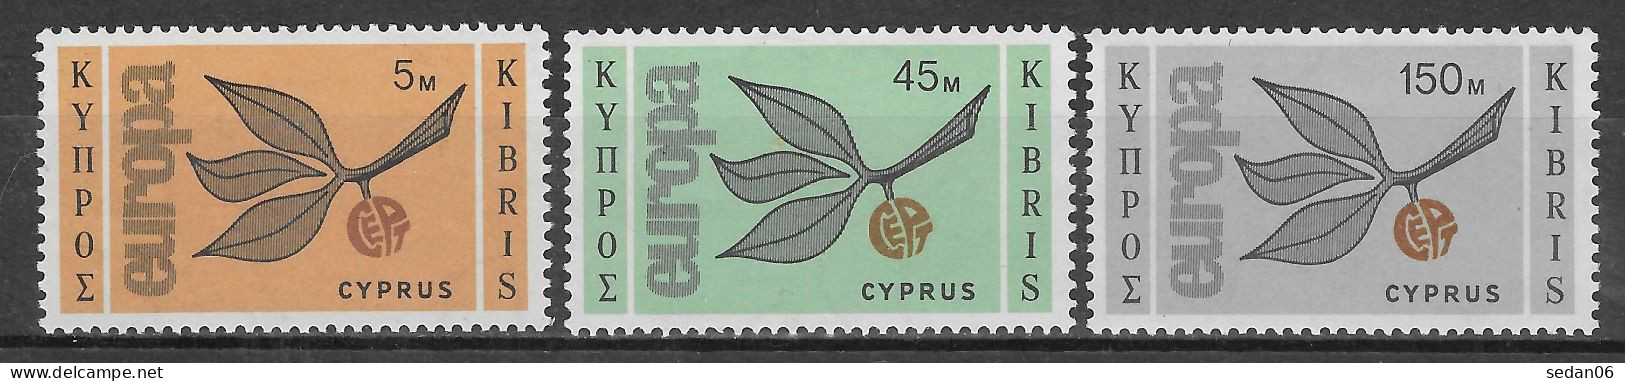 CHYPRE N°250/252** (Europa 1965) - COTE 50.00 € - 1965